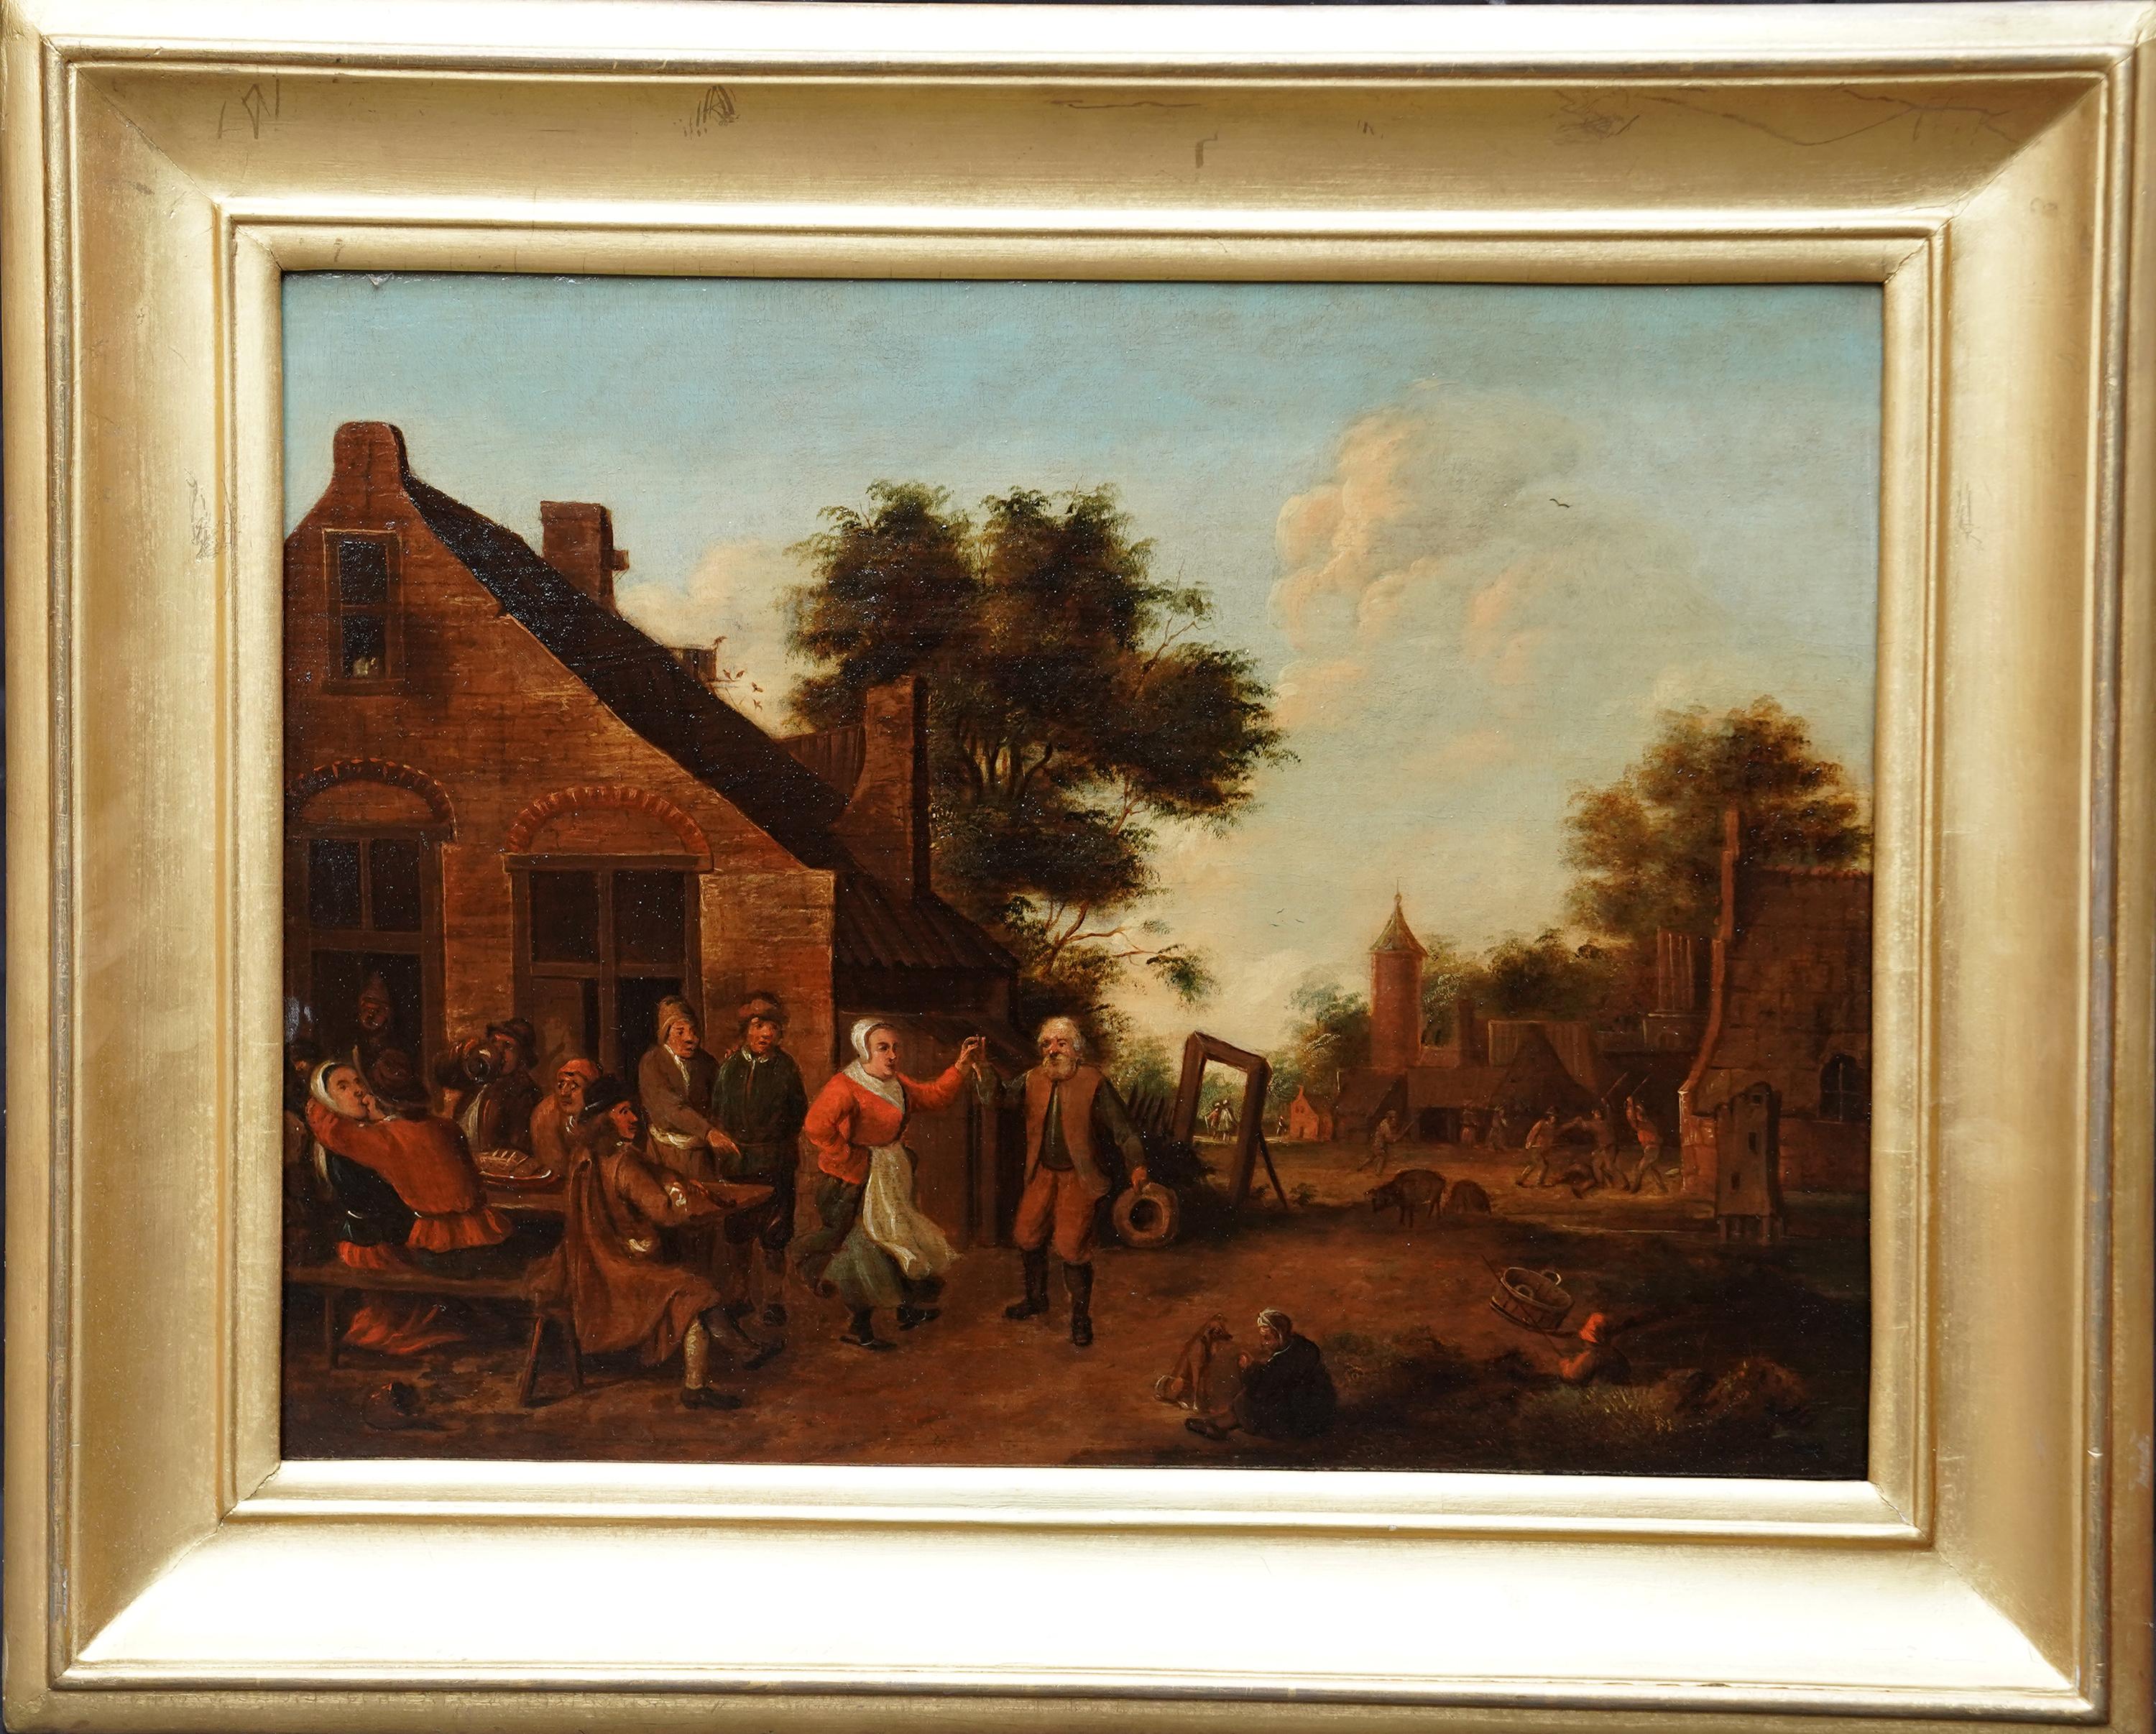 Thomas van Apshoven Landscape Painting – Dorfbewohner in einer Landschaft - Flämische Kunst des 17. Jahrhunderts figurative Landschaft Ölgemälde